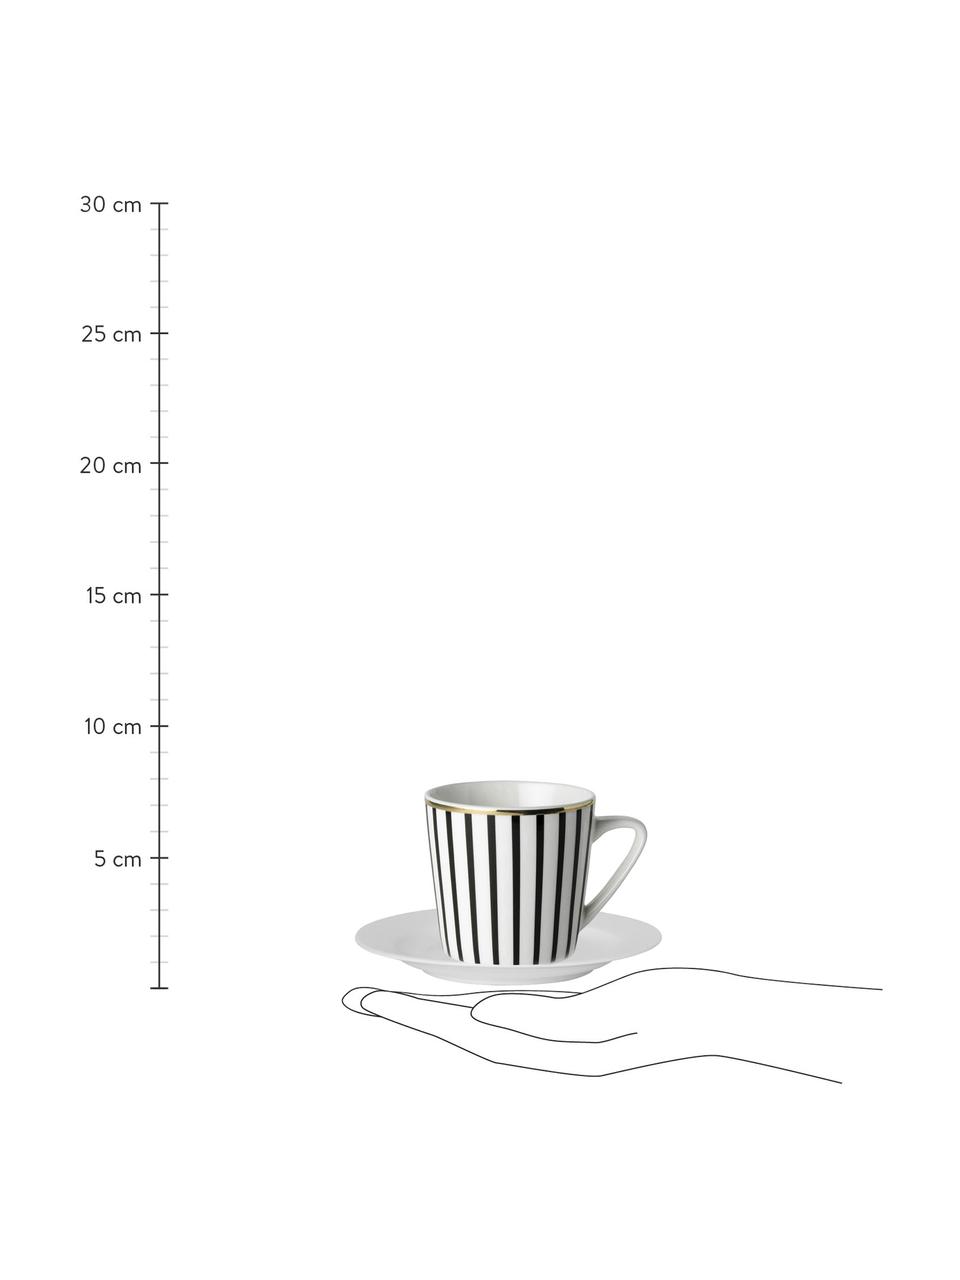 Kaffeetassen mit Untertassen Pluto Loft mit Streifendekor und Goldrand, 4 Stück, Porzellan, Schwarz, Weiß, Goldfarben, Ø 8 x H 8 cm, 120 ml